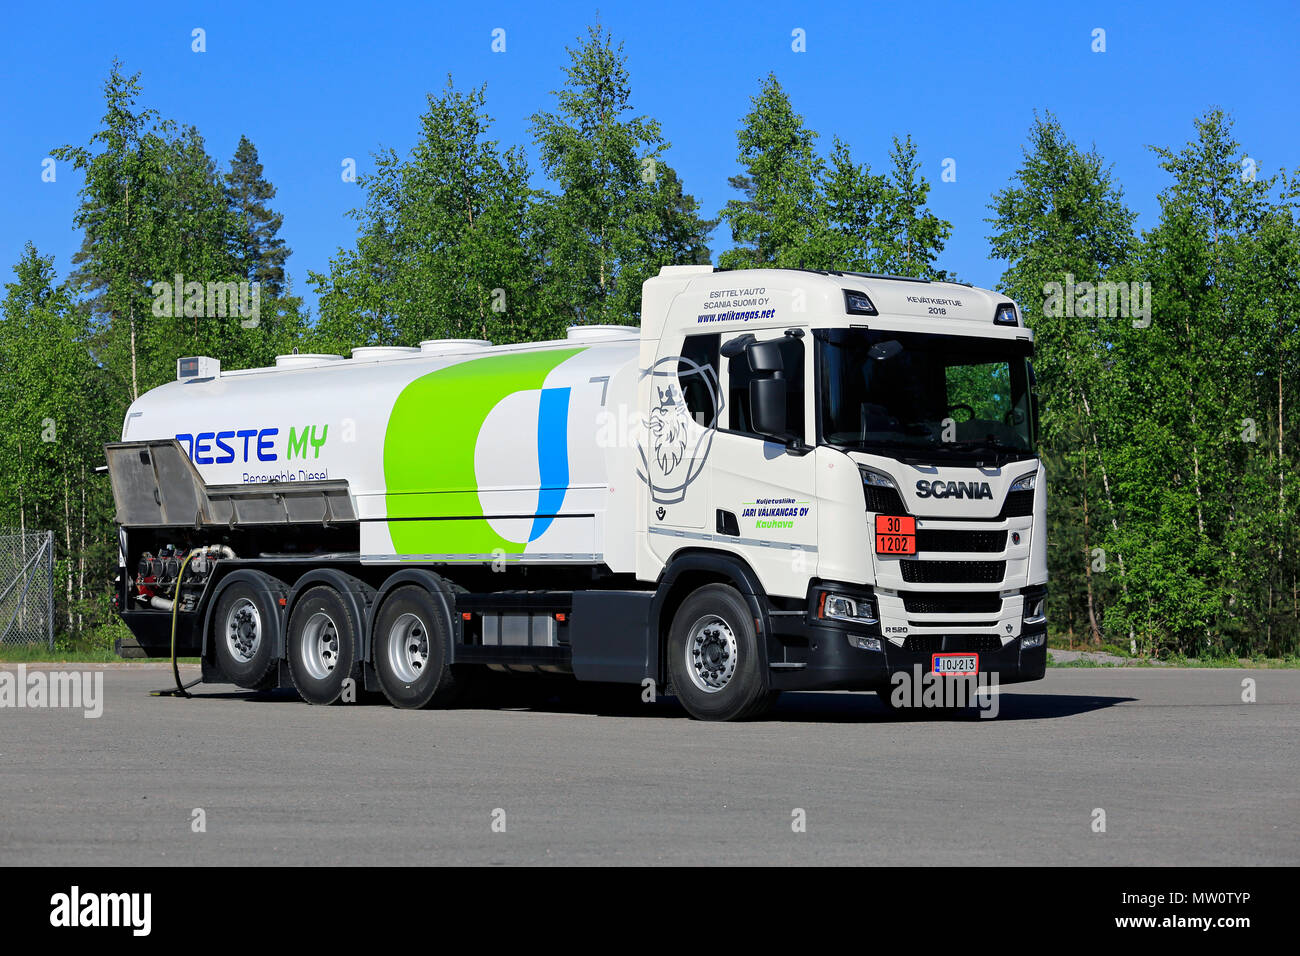 Blanc nouveau Scania R520 B8x4 camion-citerne de carburant de diesel renouvelable de Neste sur mon Tour 2018 Scania de Lohja en Finlande - 25 mai 2018. Banque D'Images